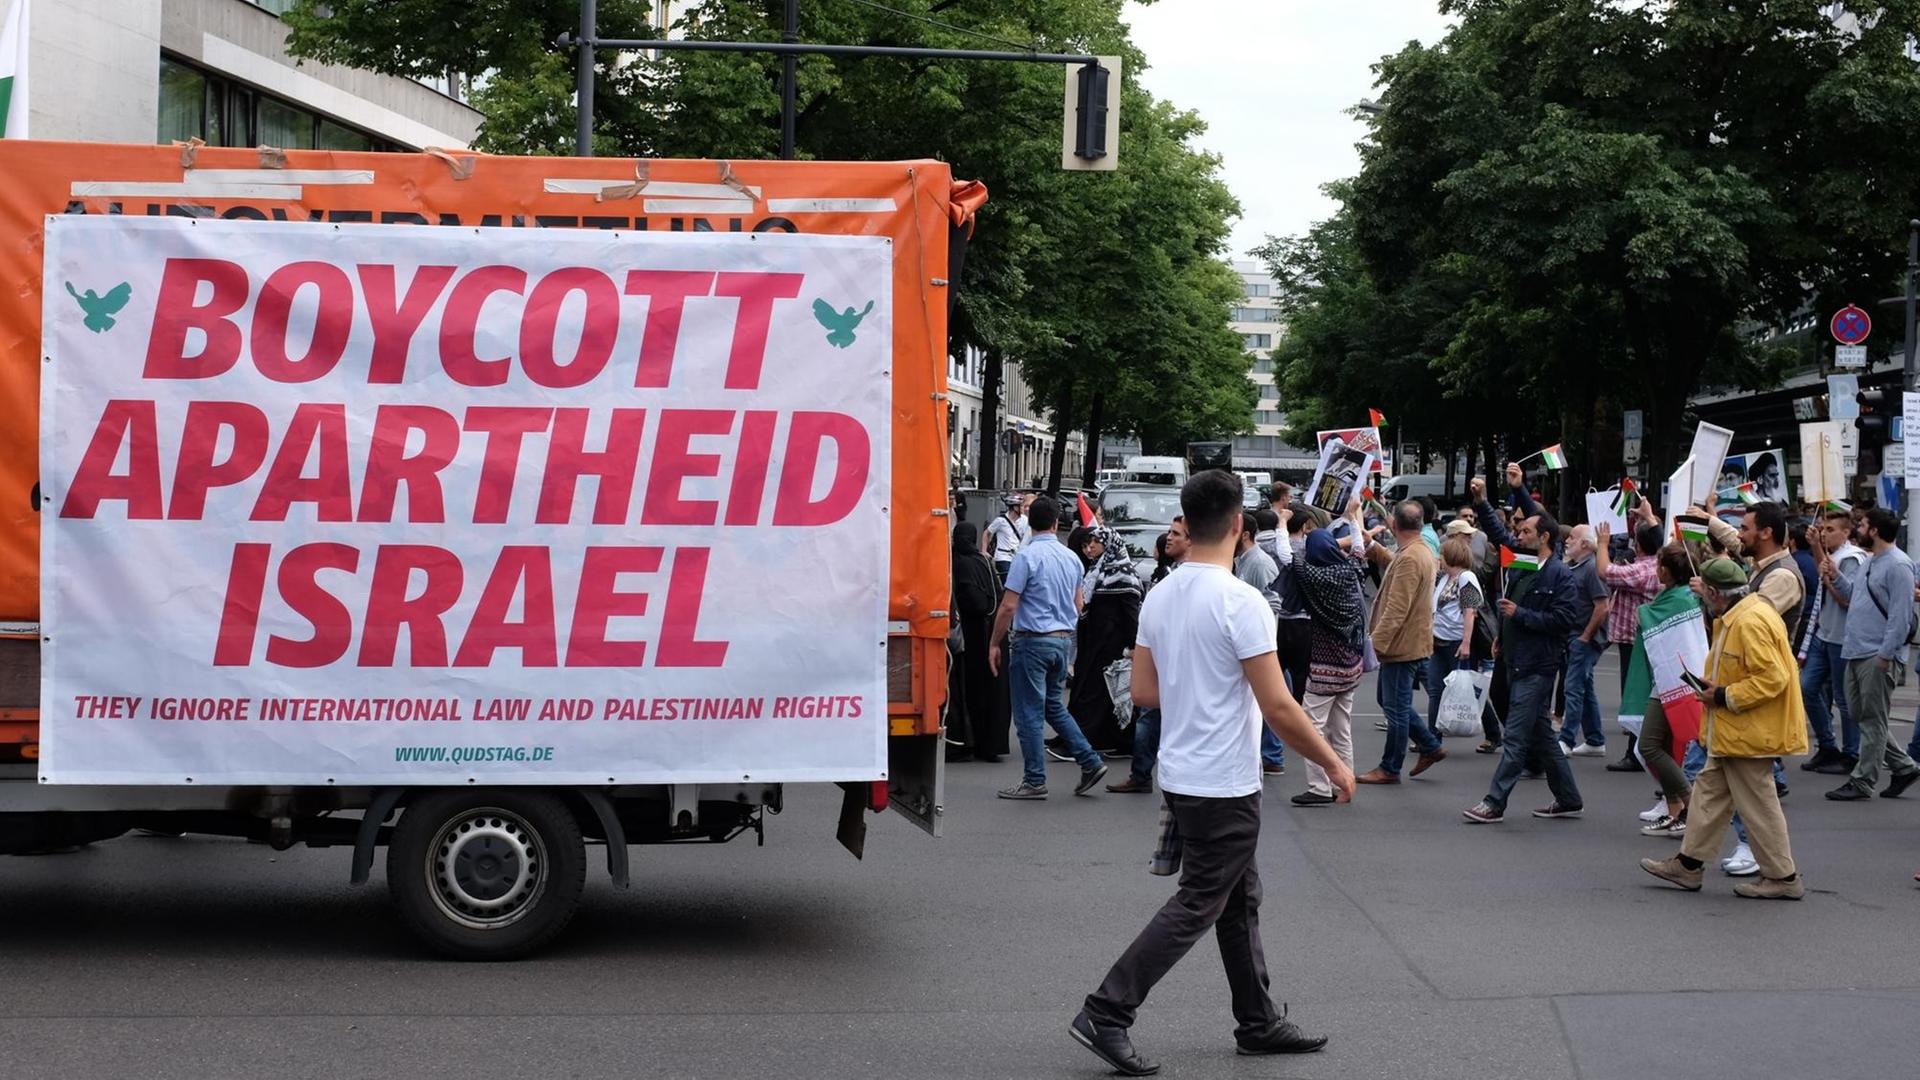 Am Al-Kuds-Tag demonstrieren Palästinenser auf dem Berliner Kurfürstendamm gegen sogenannte Zionisten und gegen Israel, u.a. mit Transparenten, auf denen zum Boykott gegen Israel aufgerufen wird und Zionisten als Faschisten bezeichnet werden.